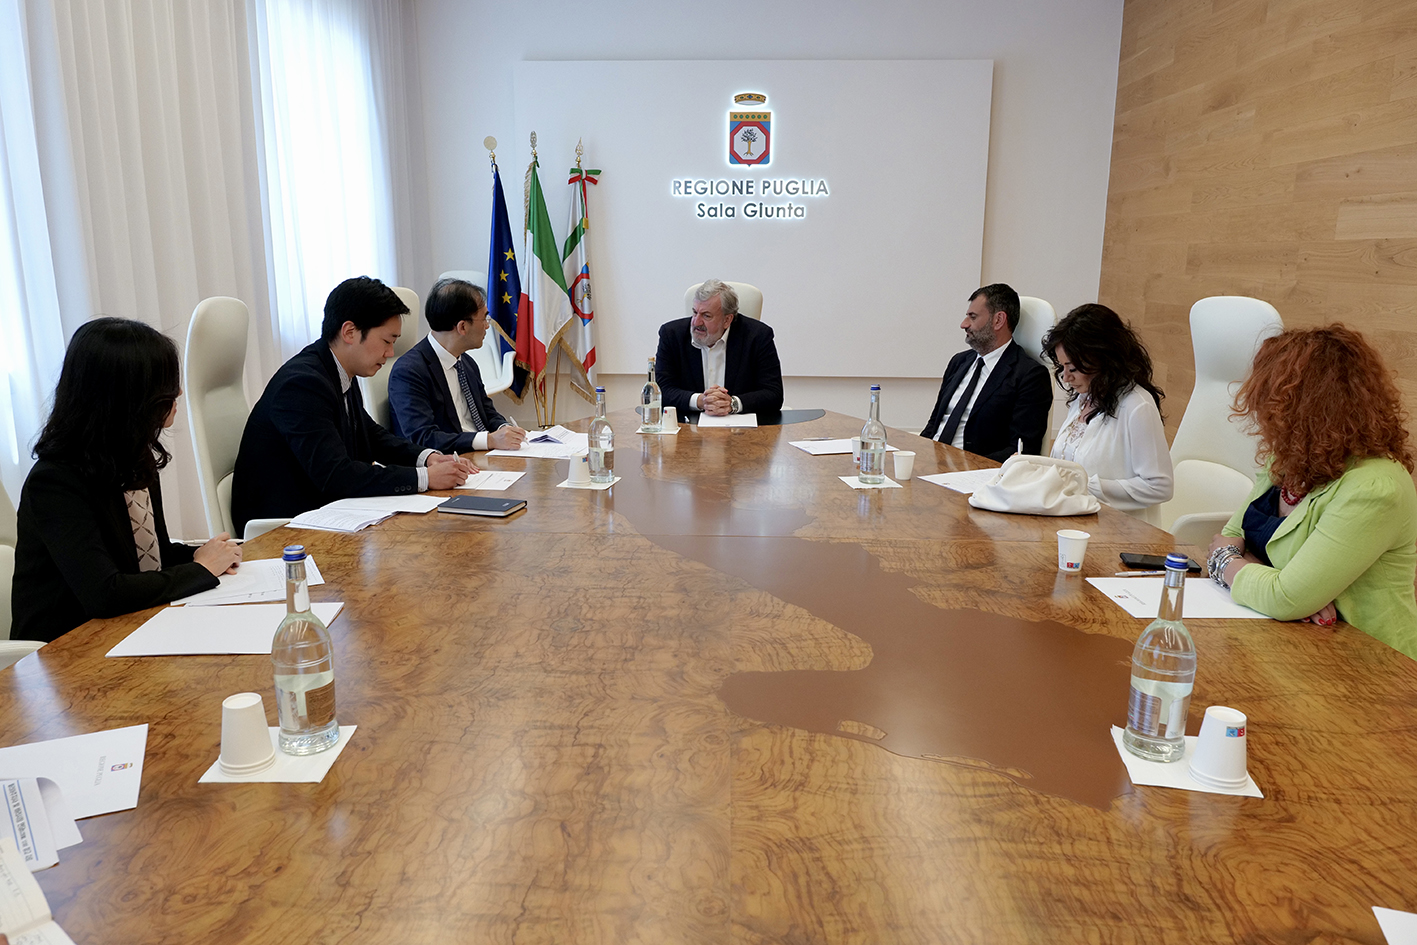 Galleria Korea Week: il presidente della Regione Puglia e il sindaco di Bari incontrano l'ambasciatore della Corea del Sud - Diapositiva 2 di 4